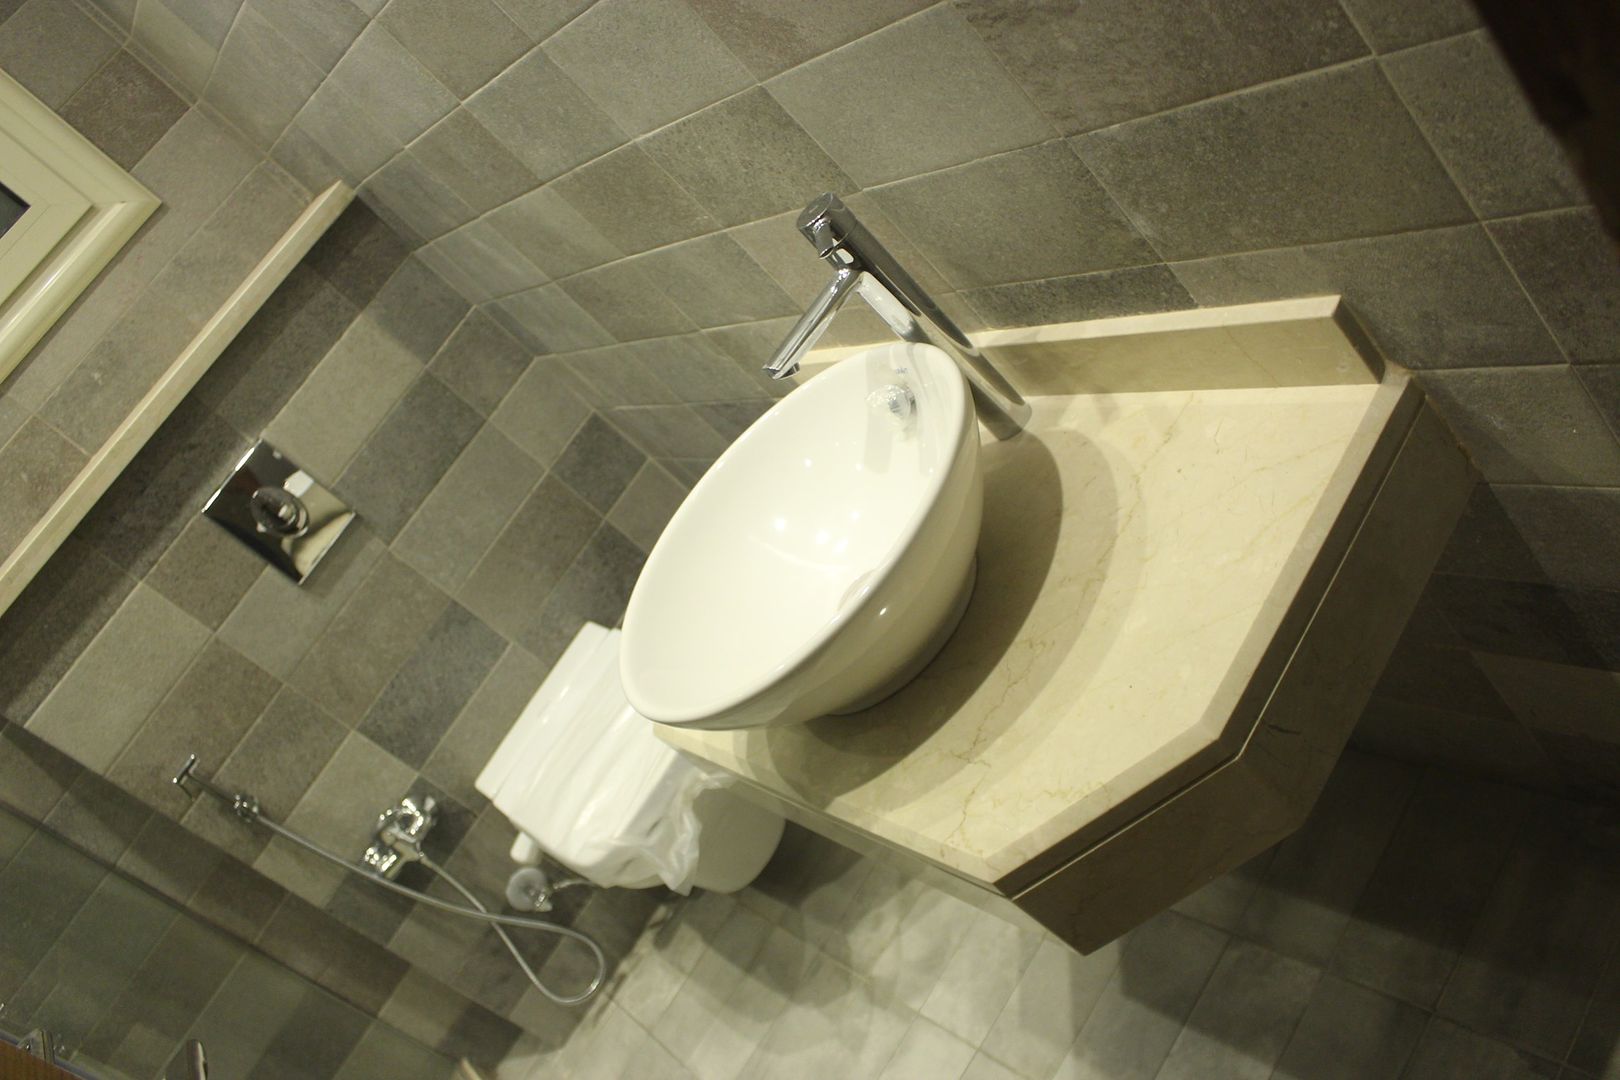 فيلا فى الرحاب, lifestyle_interiordesign lifestyle_interiordesign Modern bathroom